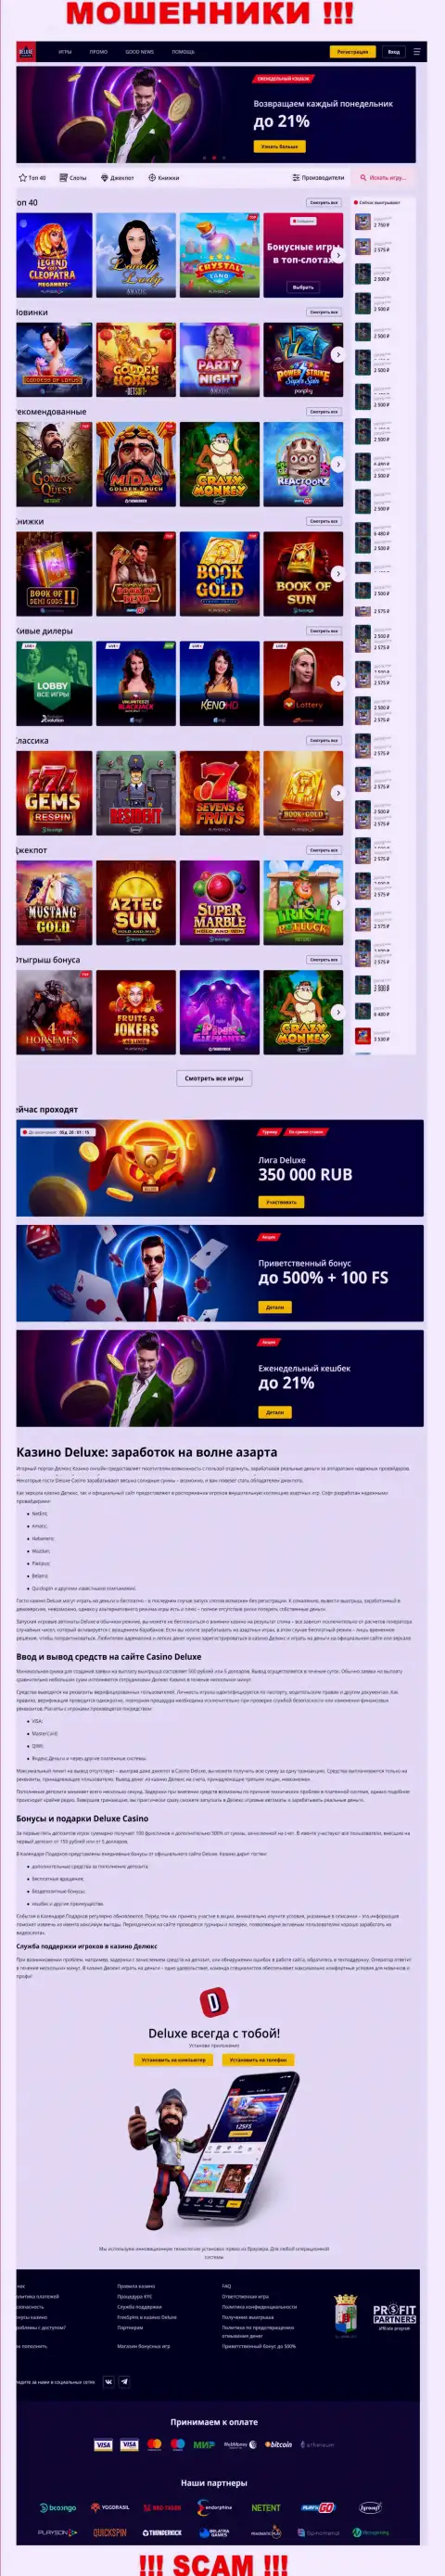 Официальная online страница конторы Deluxe Casino